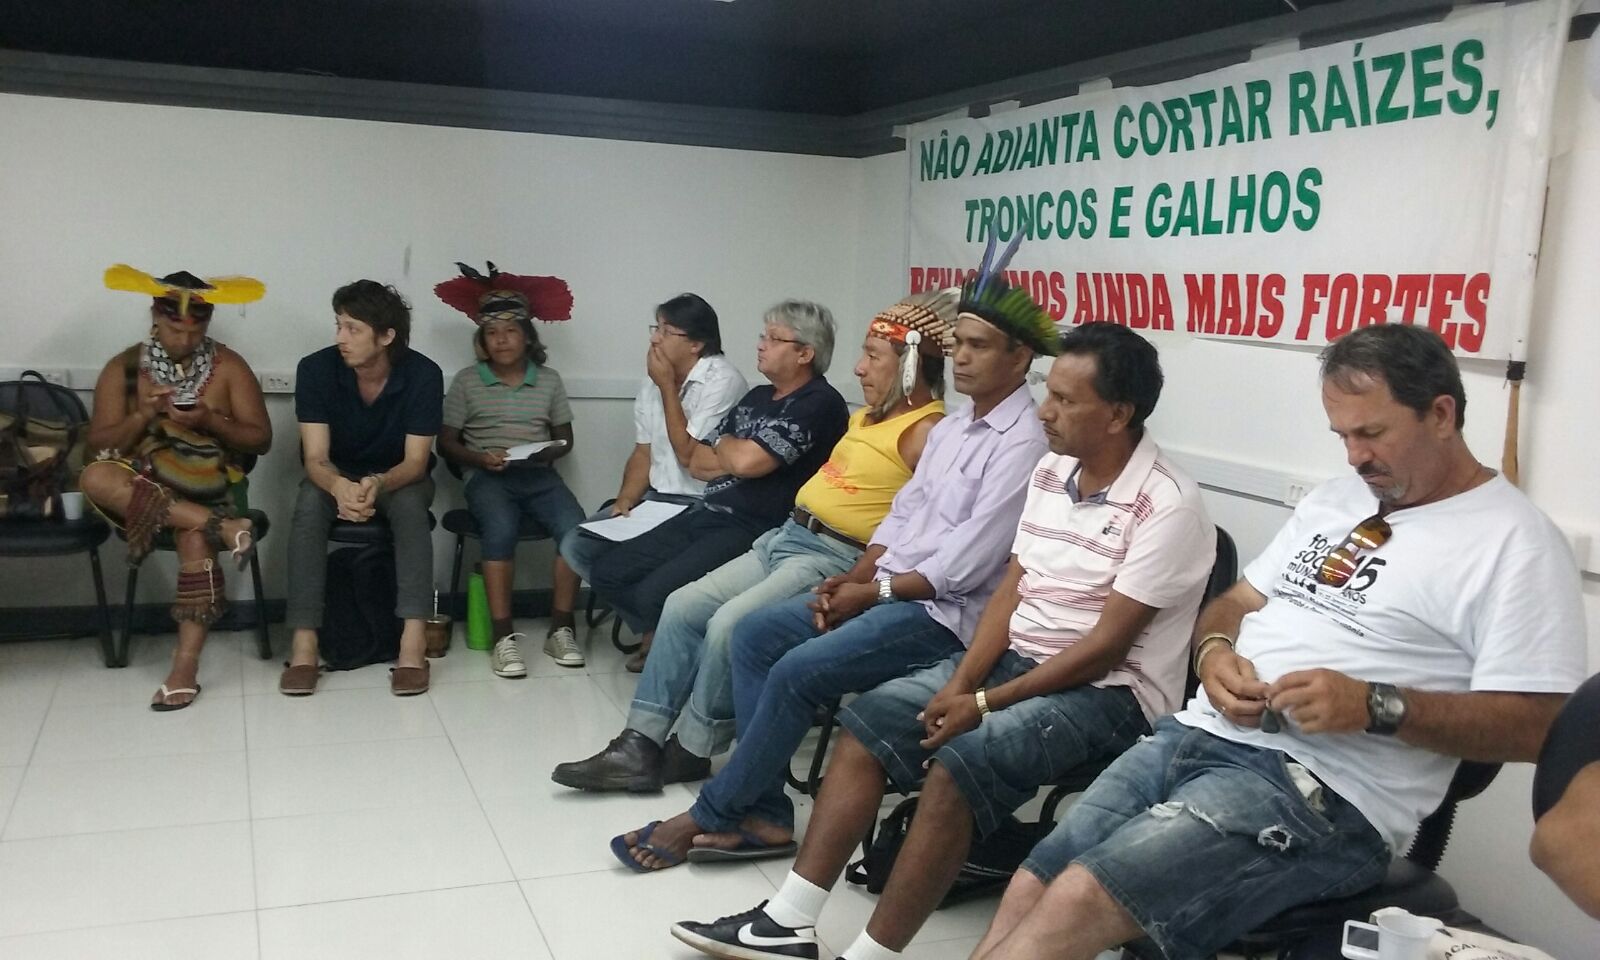 Foto: CIMI/Divulgação